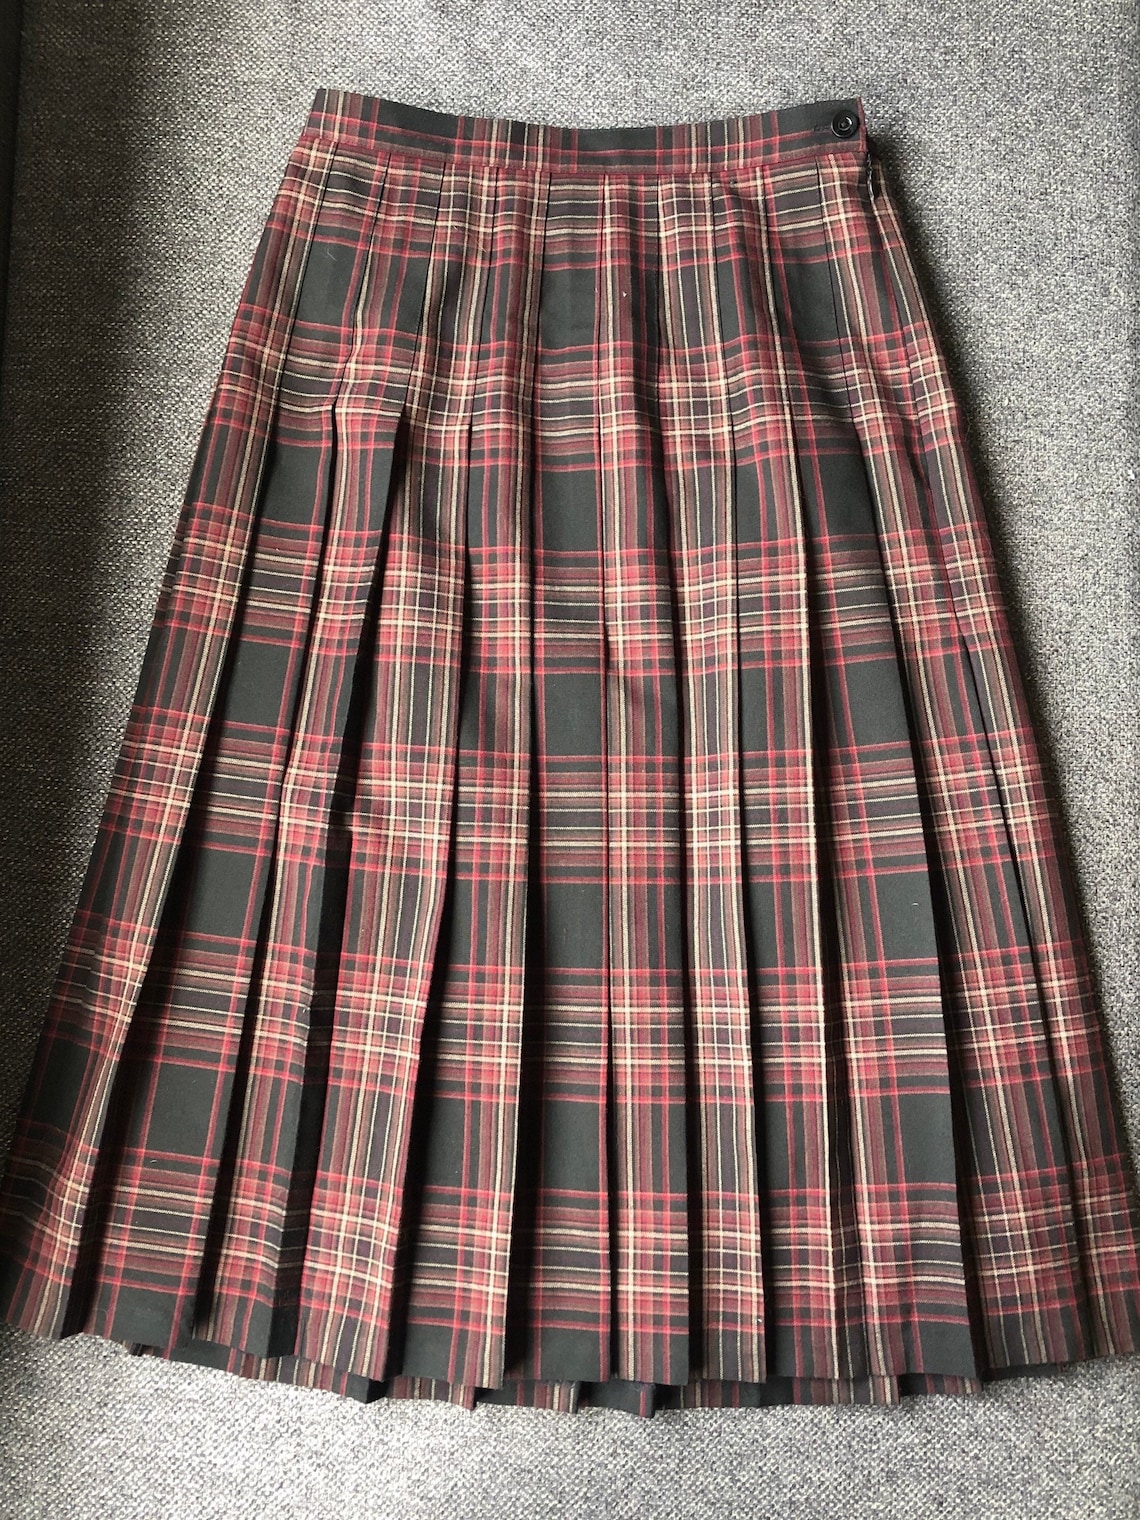 EWM Pure Classic Vintage Pleated Check Skirt Bordo English | Etsy